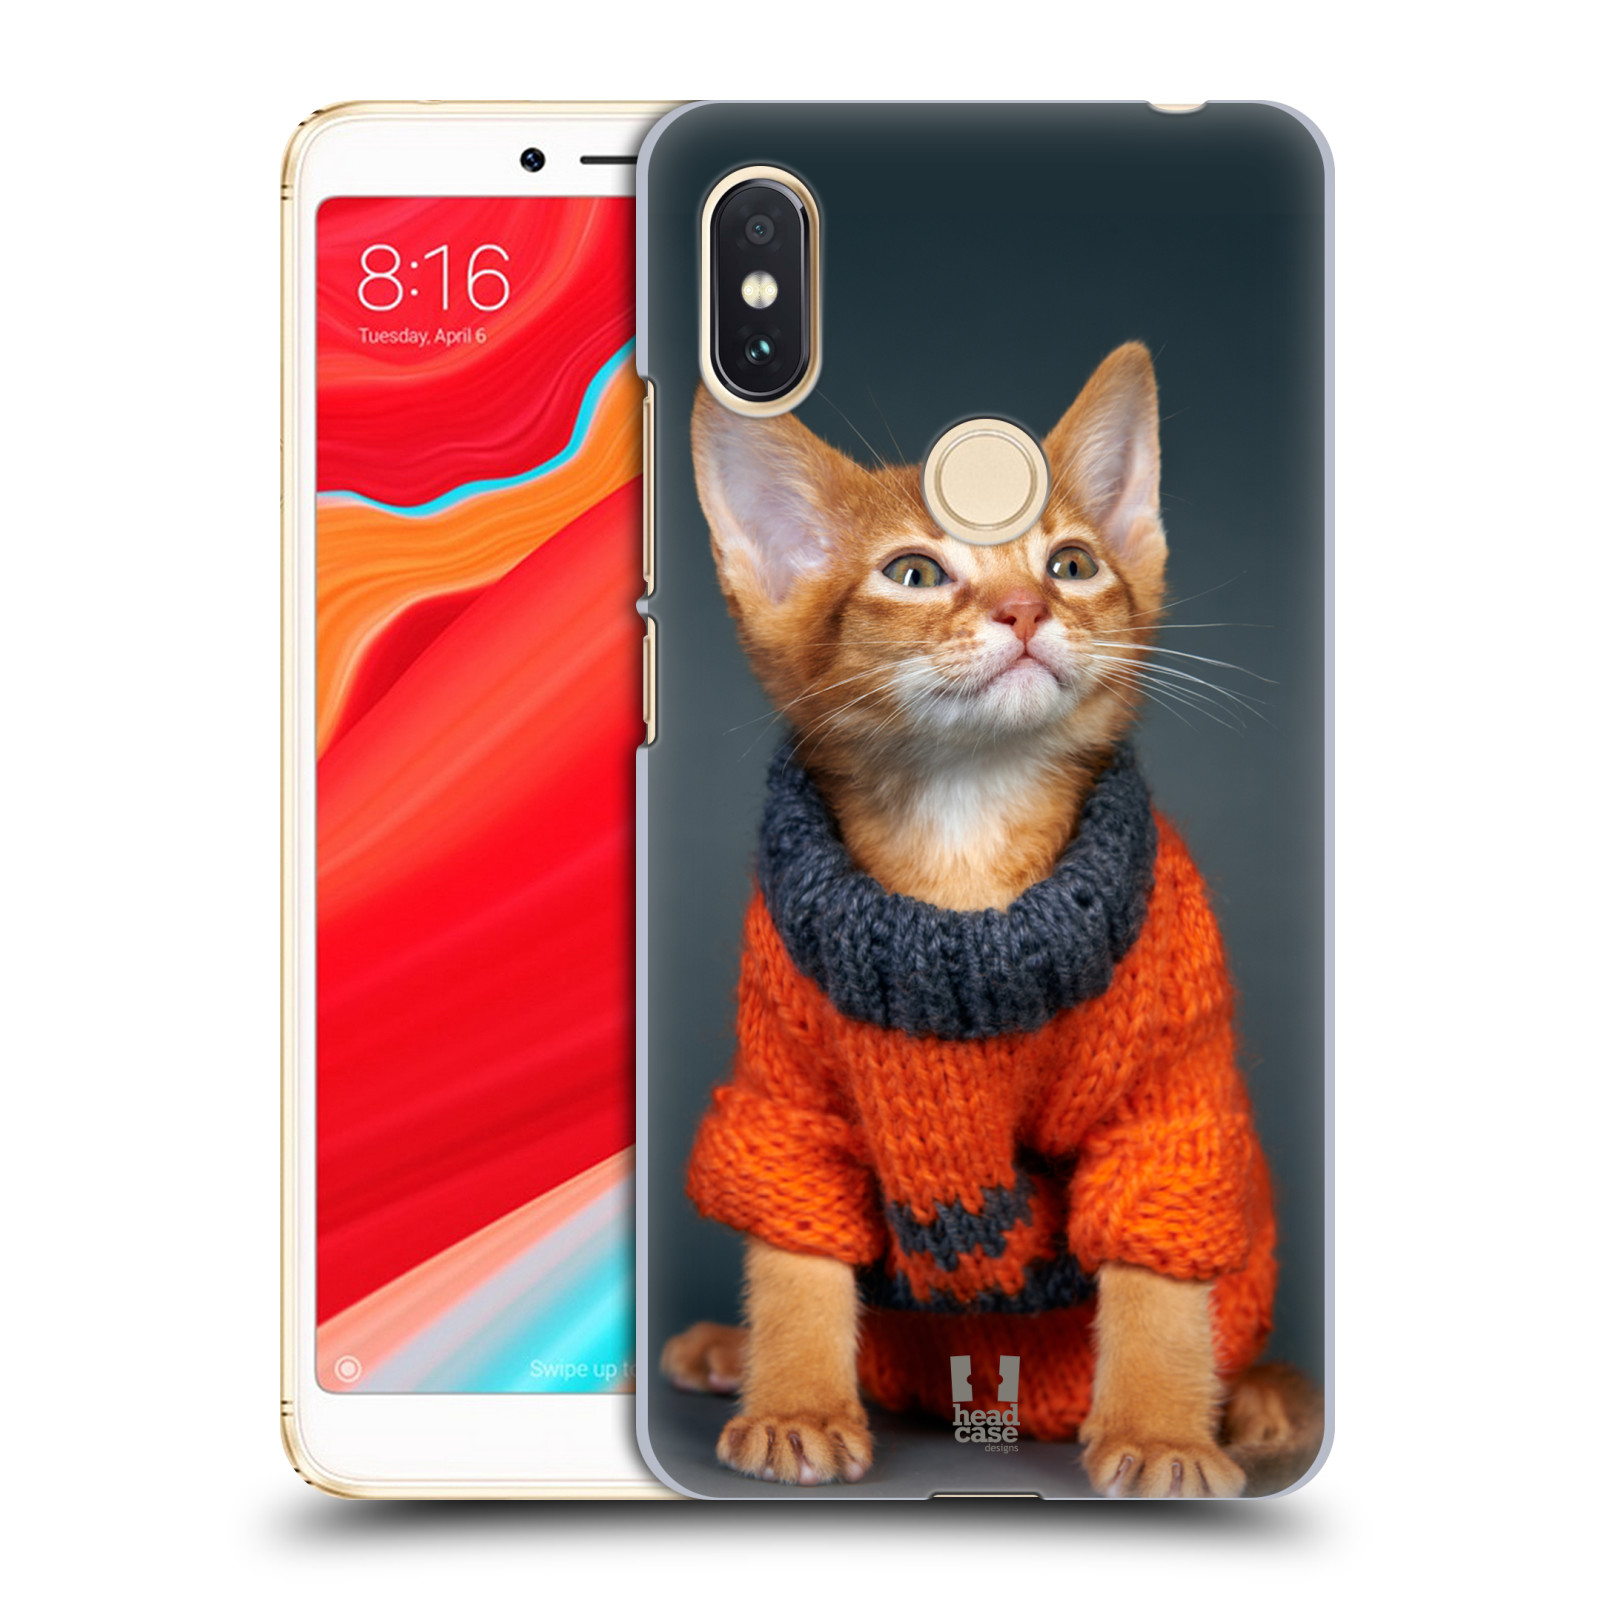 HEAD CASE plastový obal na mobil Xiaomi Redmi S2 vzor Legrační zvířátka kočička v oranžovém svetru